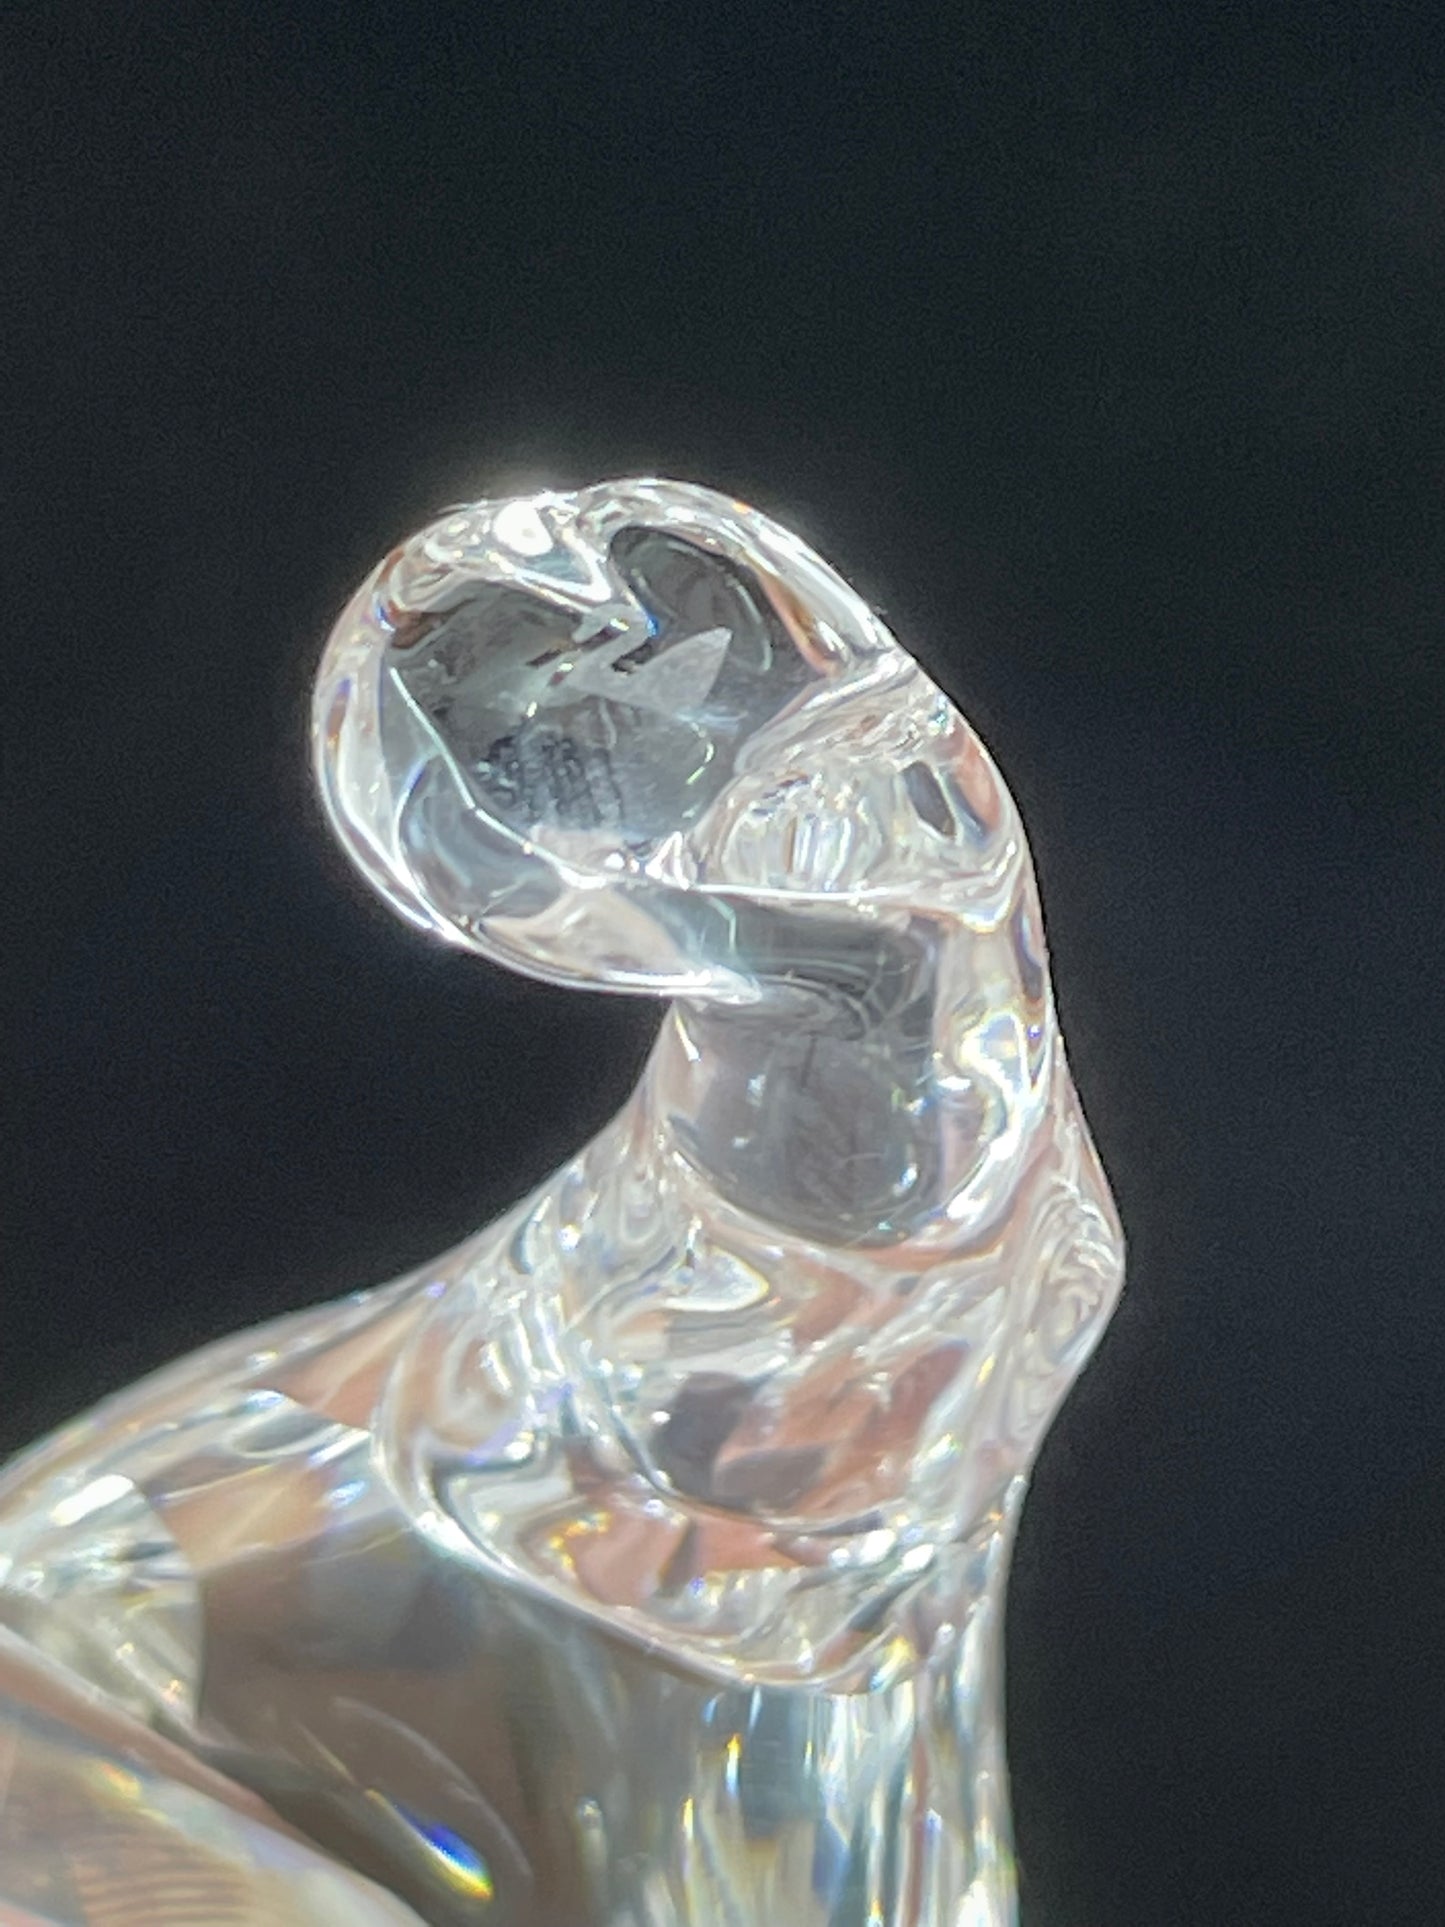 Swarovski "Endangered Species" Crystal Tiger Figurine